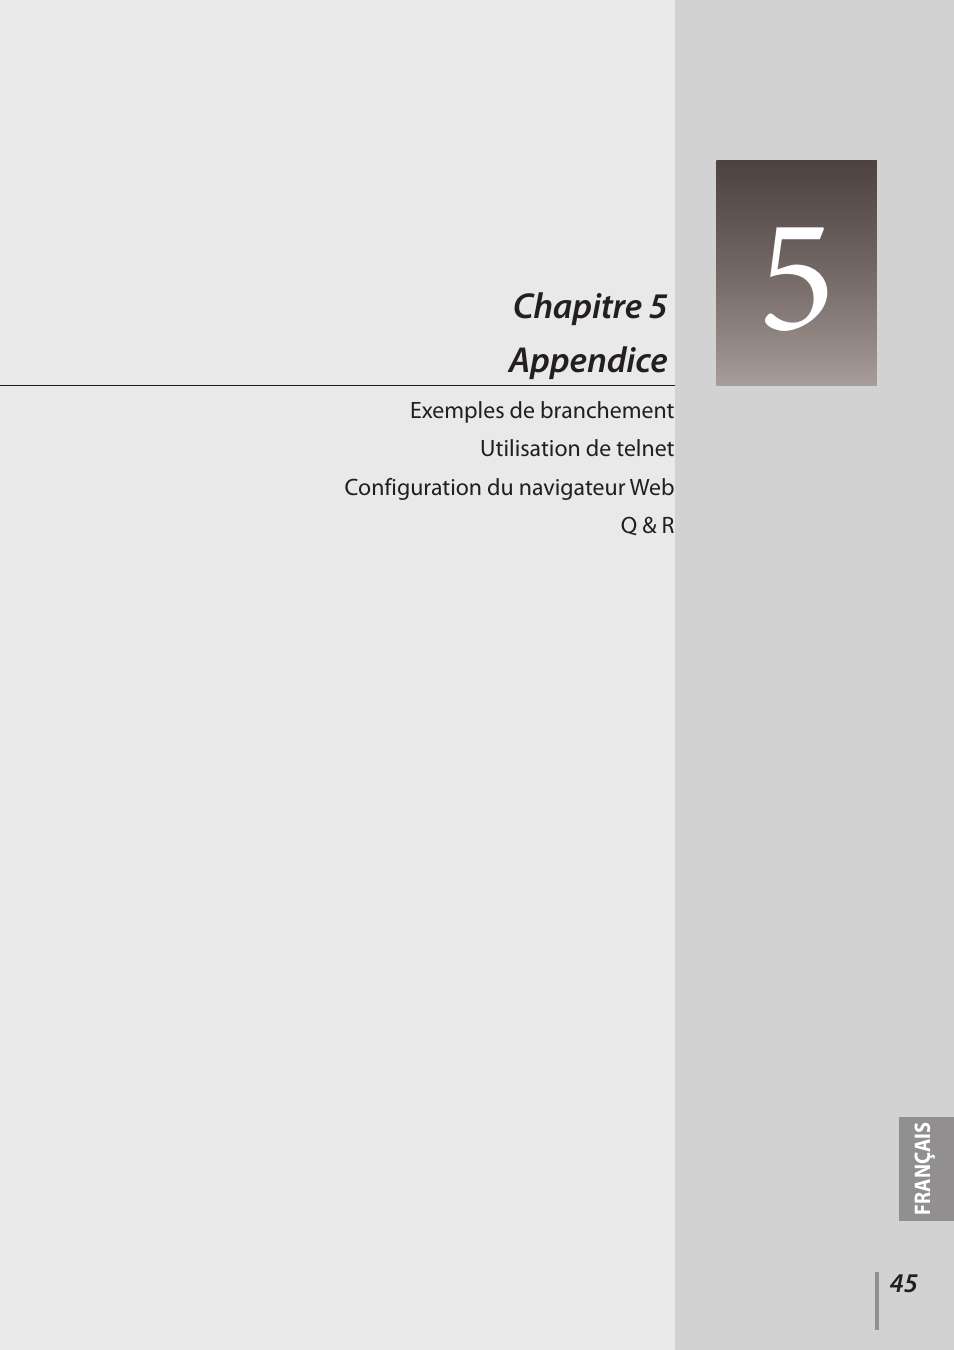 Chapitre 5 appendice | Canon LV 7490 Manuel d'utilisation | Page 45 / 62